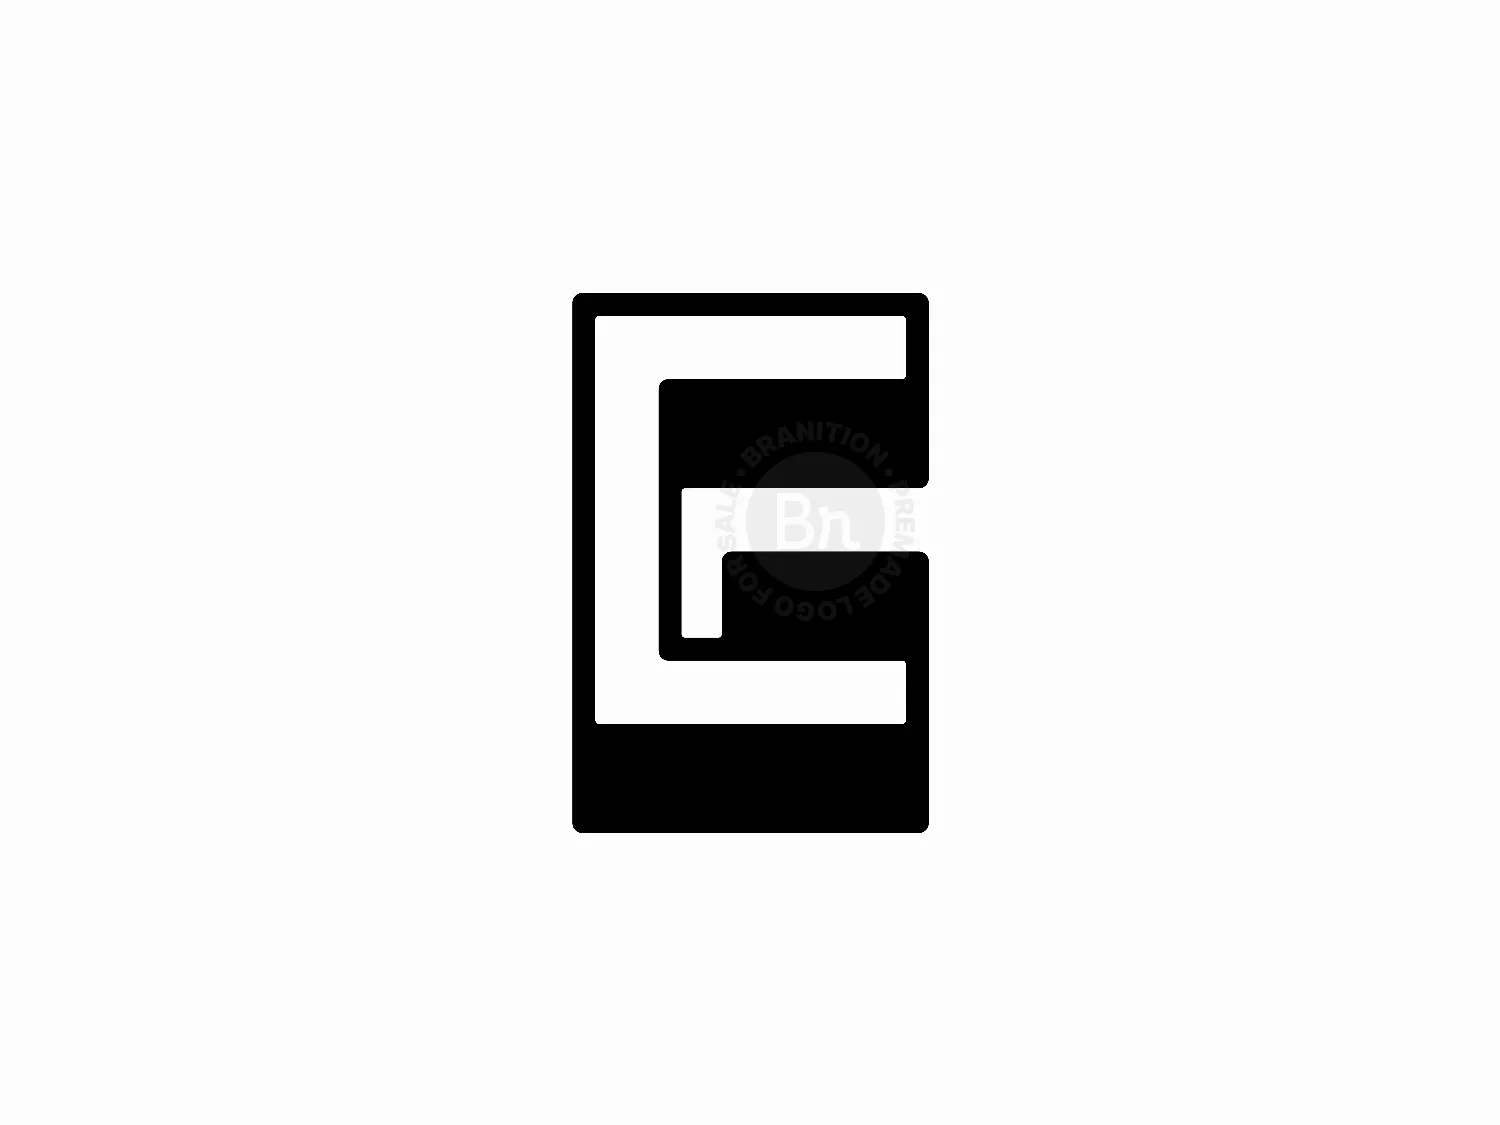 GC Letter Logo Design Vector Template or CG Logo Design